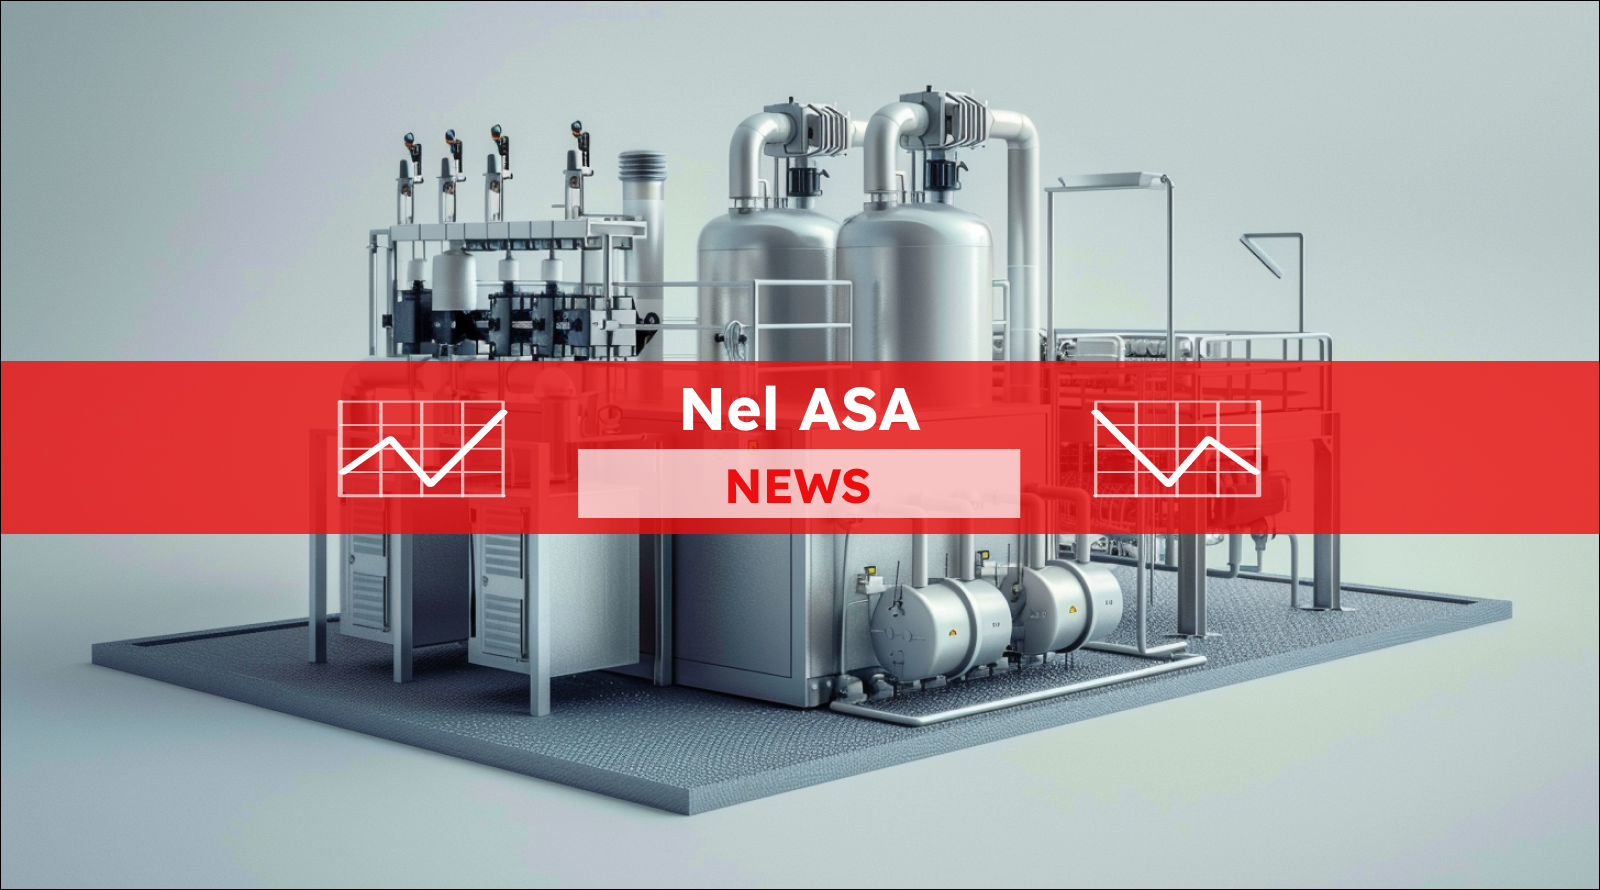 Eine Wasserstoff-Elektrolyseanlage mit zahlreichen Verbindungsrohren und Behältern, mit einem Banner Nel ASA-NEWS